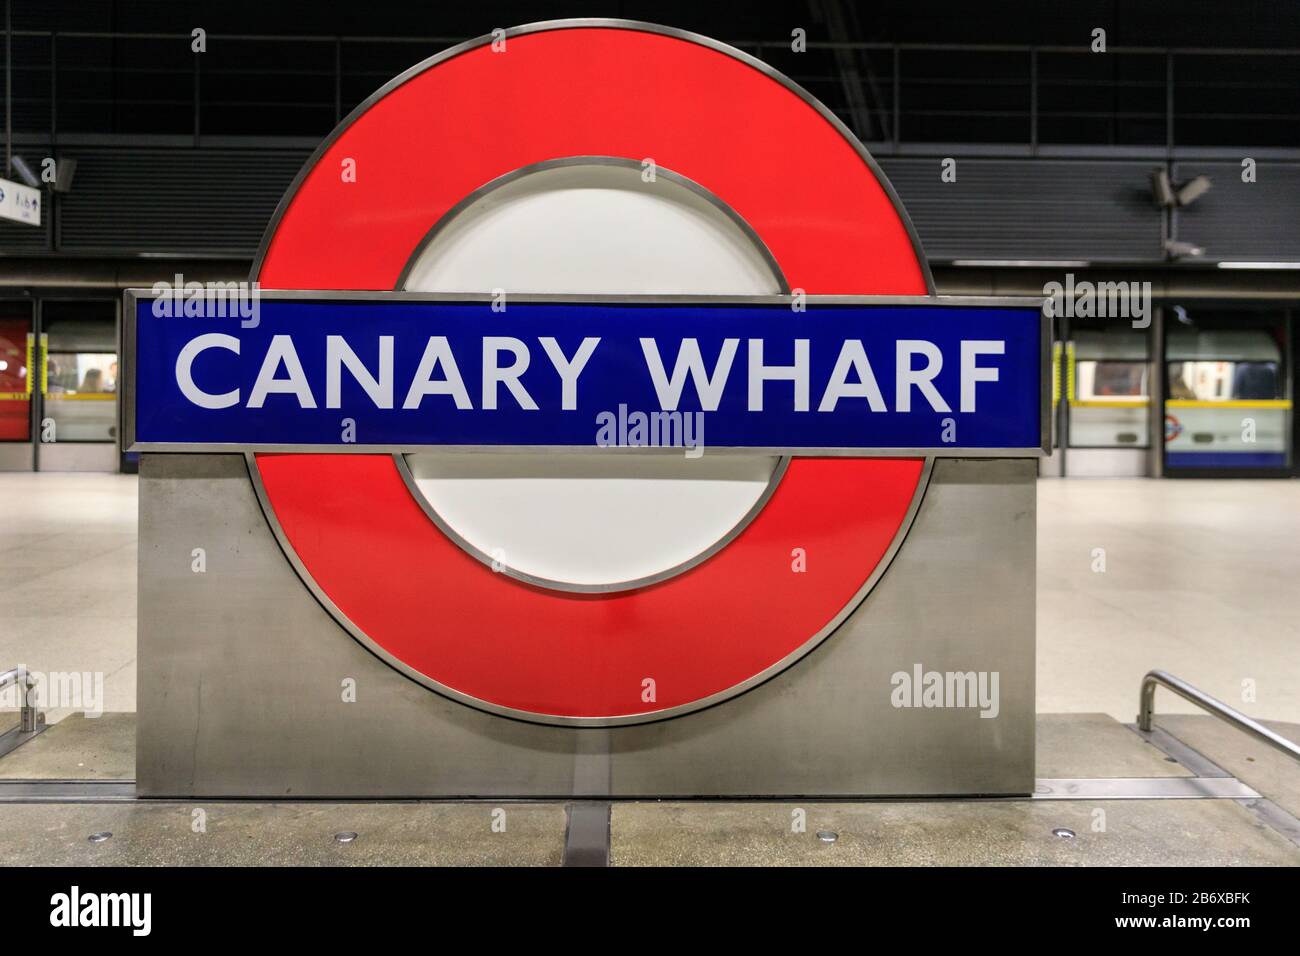 U-Bahn-Station Canary Wharf, ikonischer roter Kreis mit blauem Logo der Londoner U-Bahn oder U-Bahn, London, England, Großbritannien Stockfoto